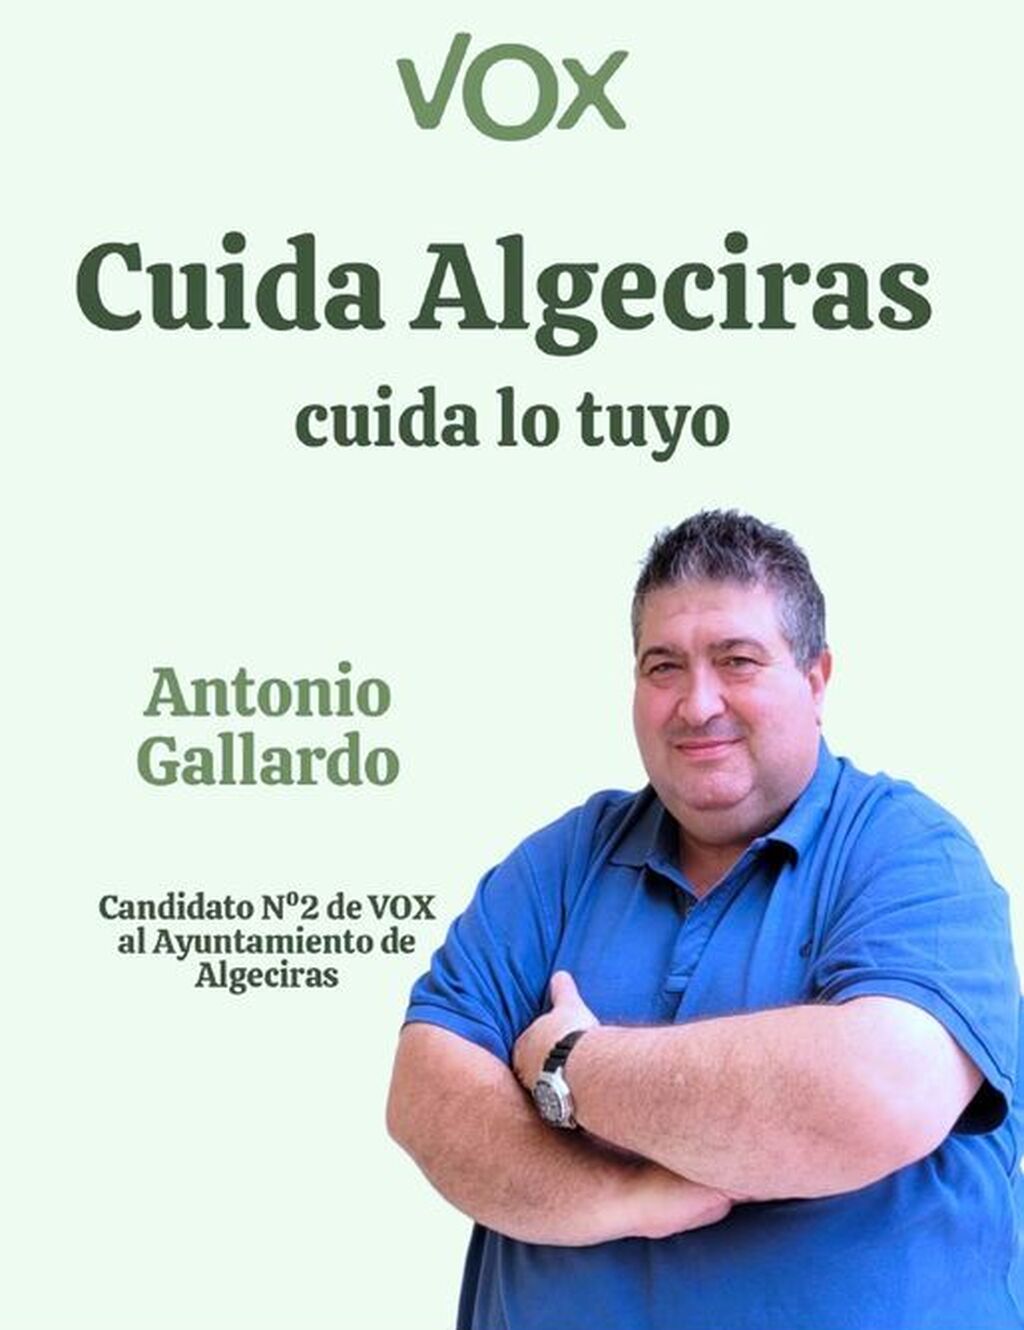 Antonio Gallardo Tejeda (Vox)